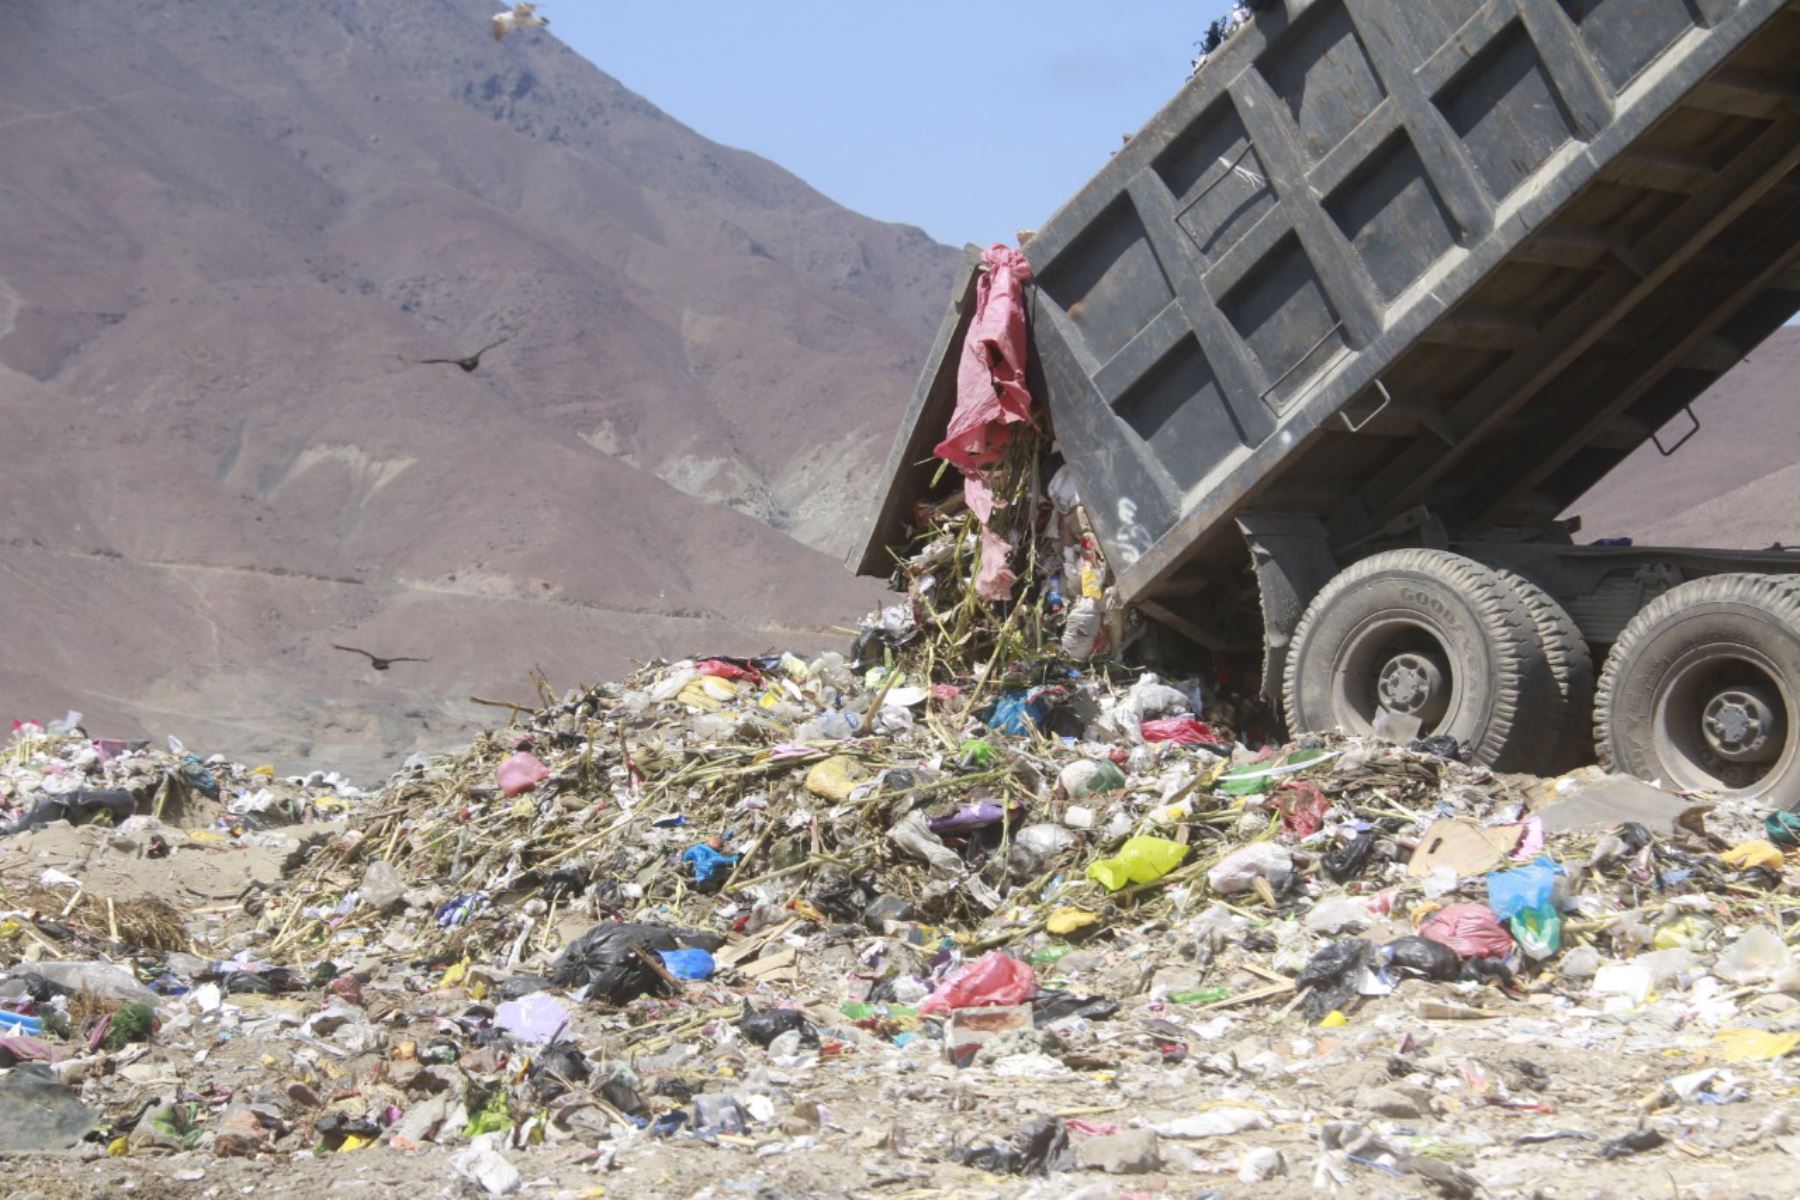 La planta de tratamiento de residuos sólidos de Huaraz permitirá solucionar la problemática del manejo inadecuado de los residuos sólidos.